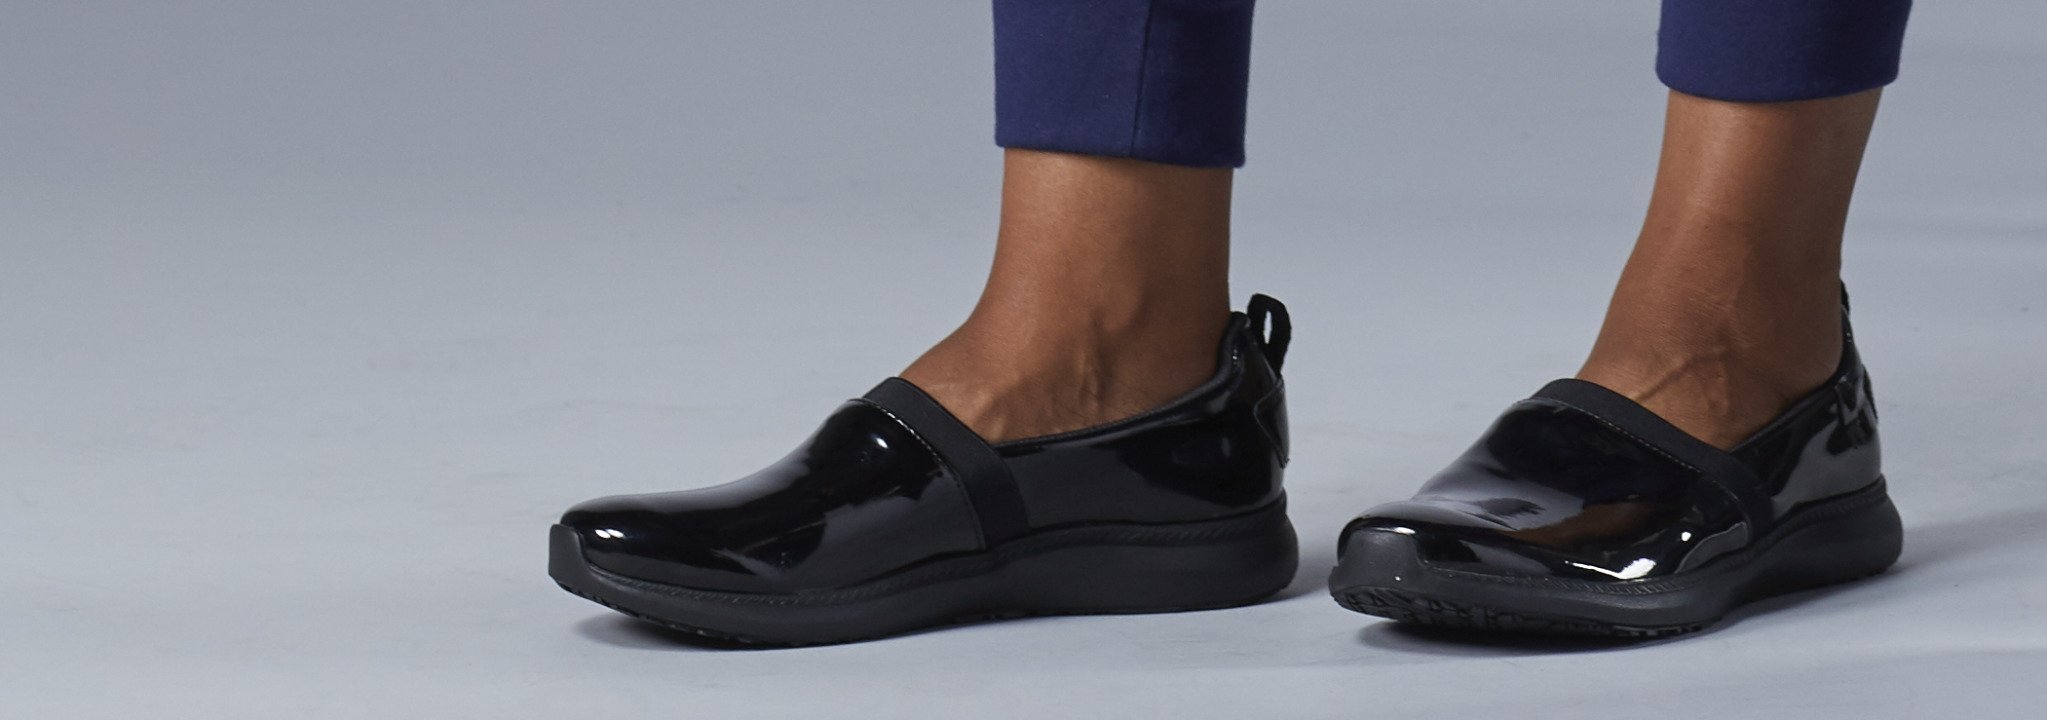 Slip Resistant Shoes for Women | Vionic Pro